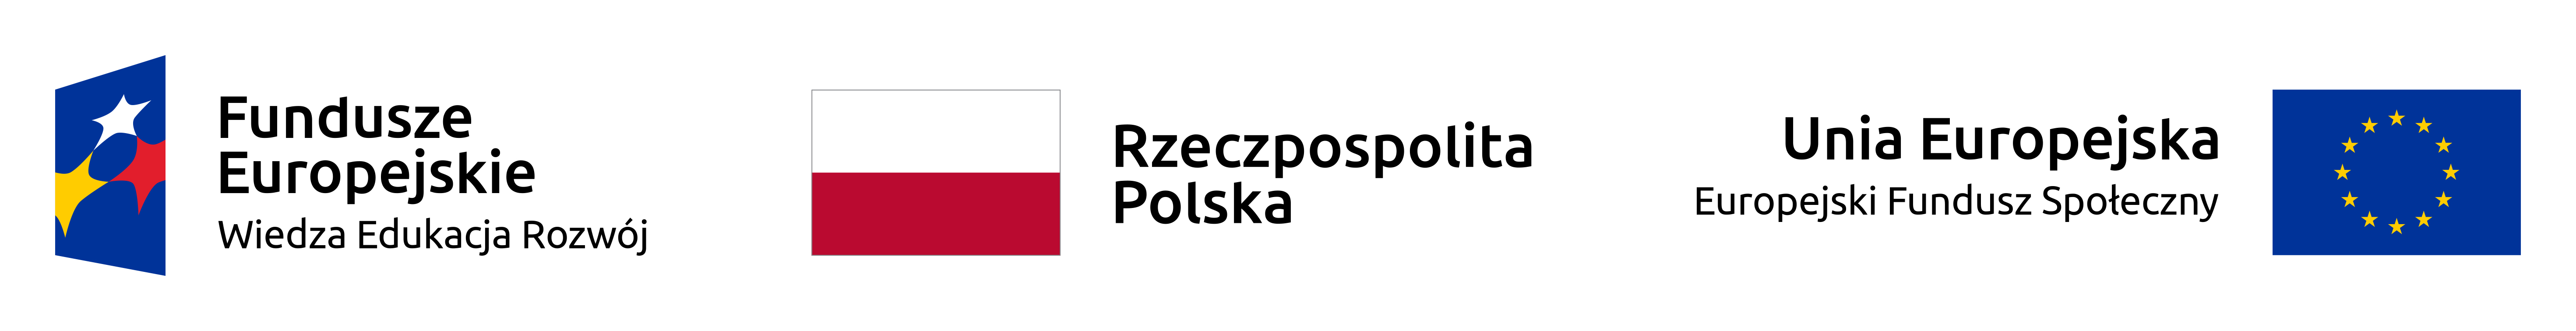 Na obrazku znajdują się 3 loga od lewej 1. Fundusze Europejskie Wiedza Edukacja Rozwój 2. Flaga Rzeczypospolitej Polskiej 3. Flaga Unii Europejskiej z podpisem Unia Europejska Europejski Fundusz Społeczny